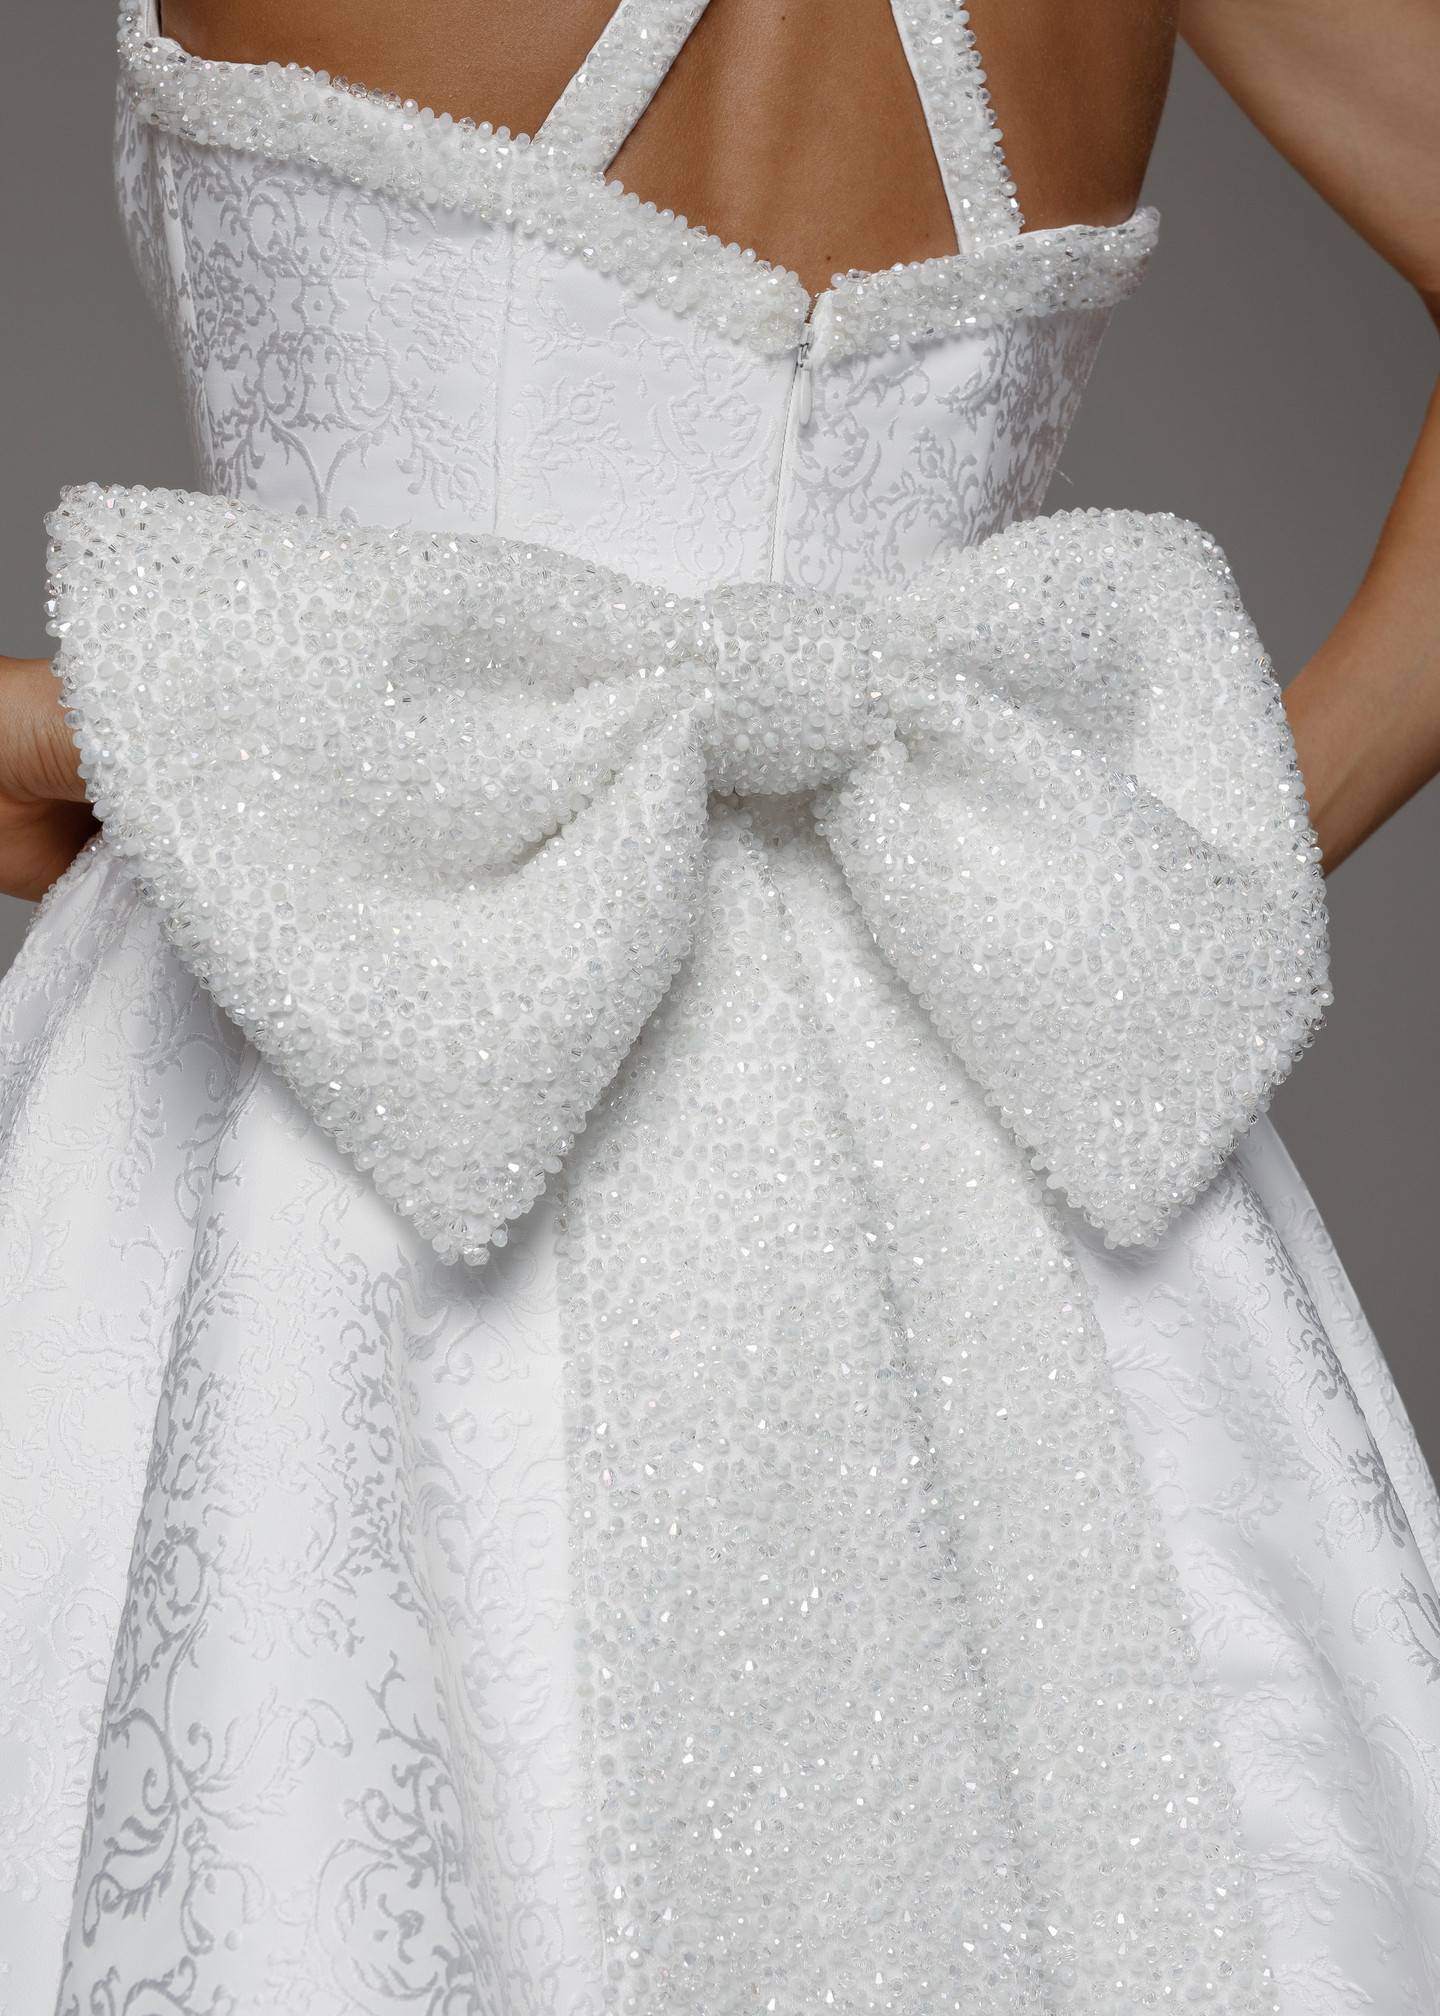 Платье Моника, 2020, одежда, платье, свадебное, молочно-белый, жаккард, вышивка, А-силуэт, шлейф